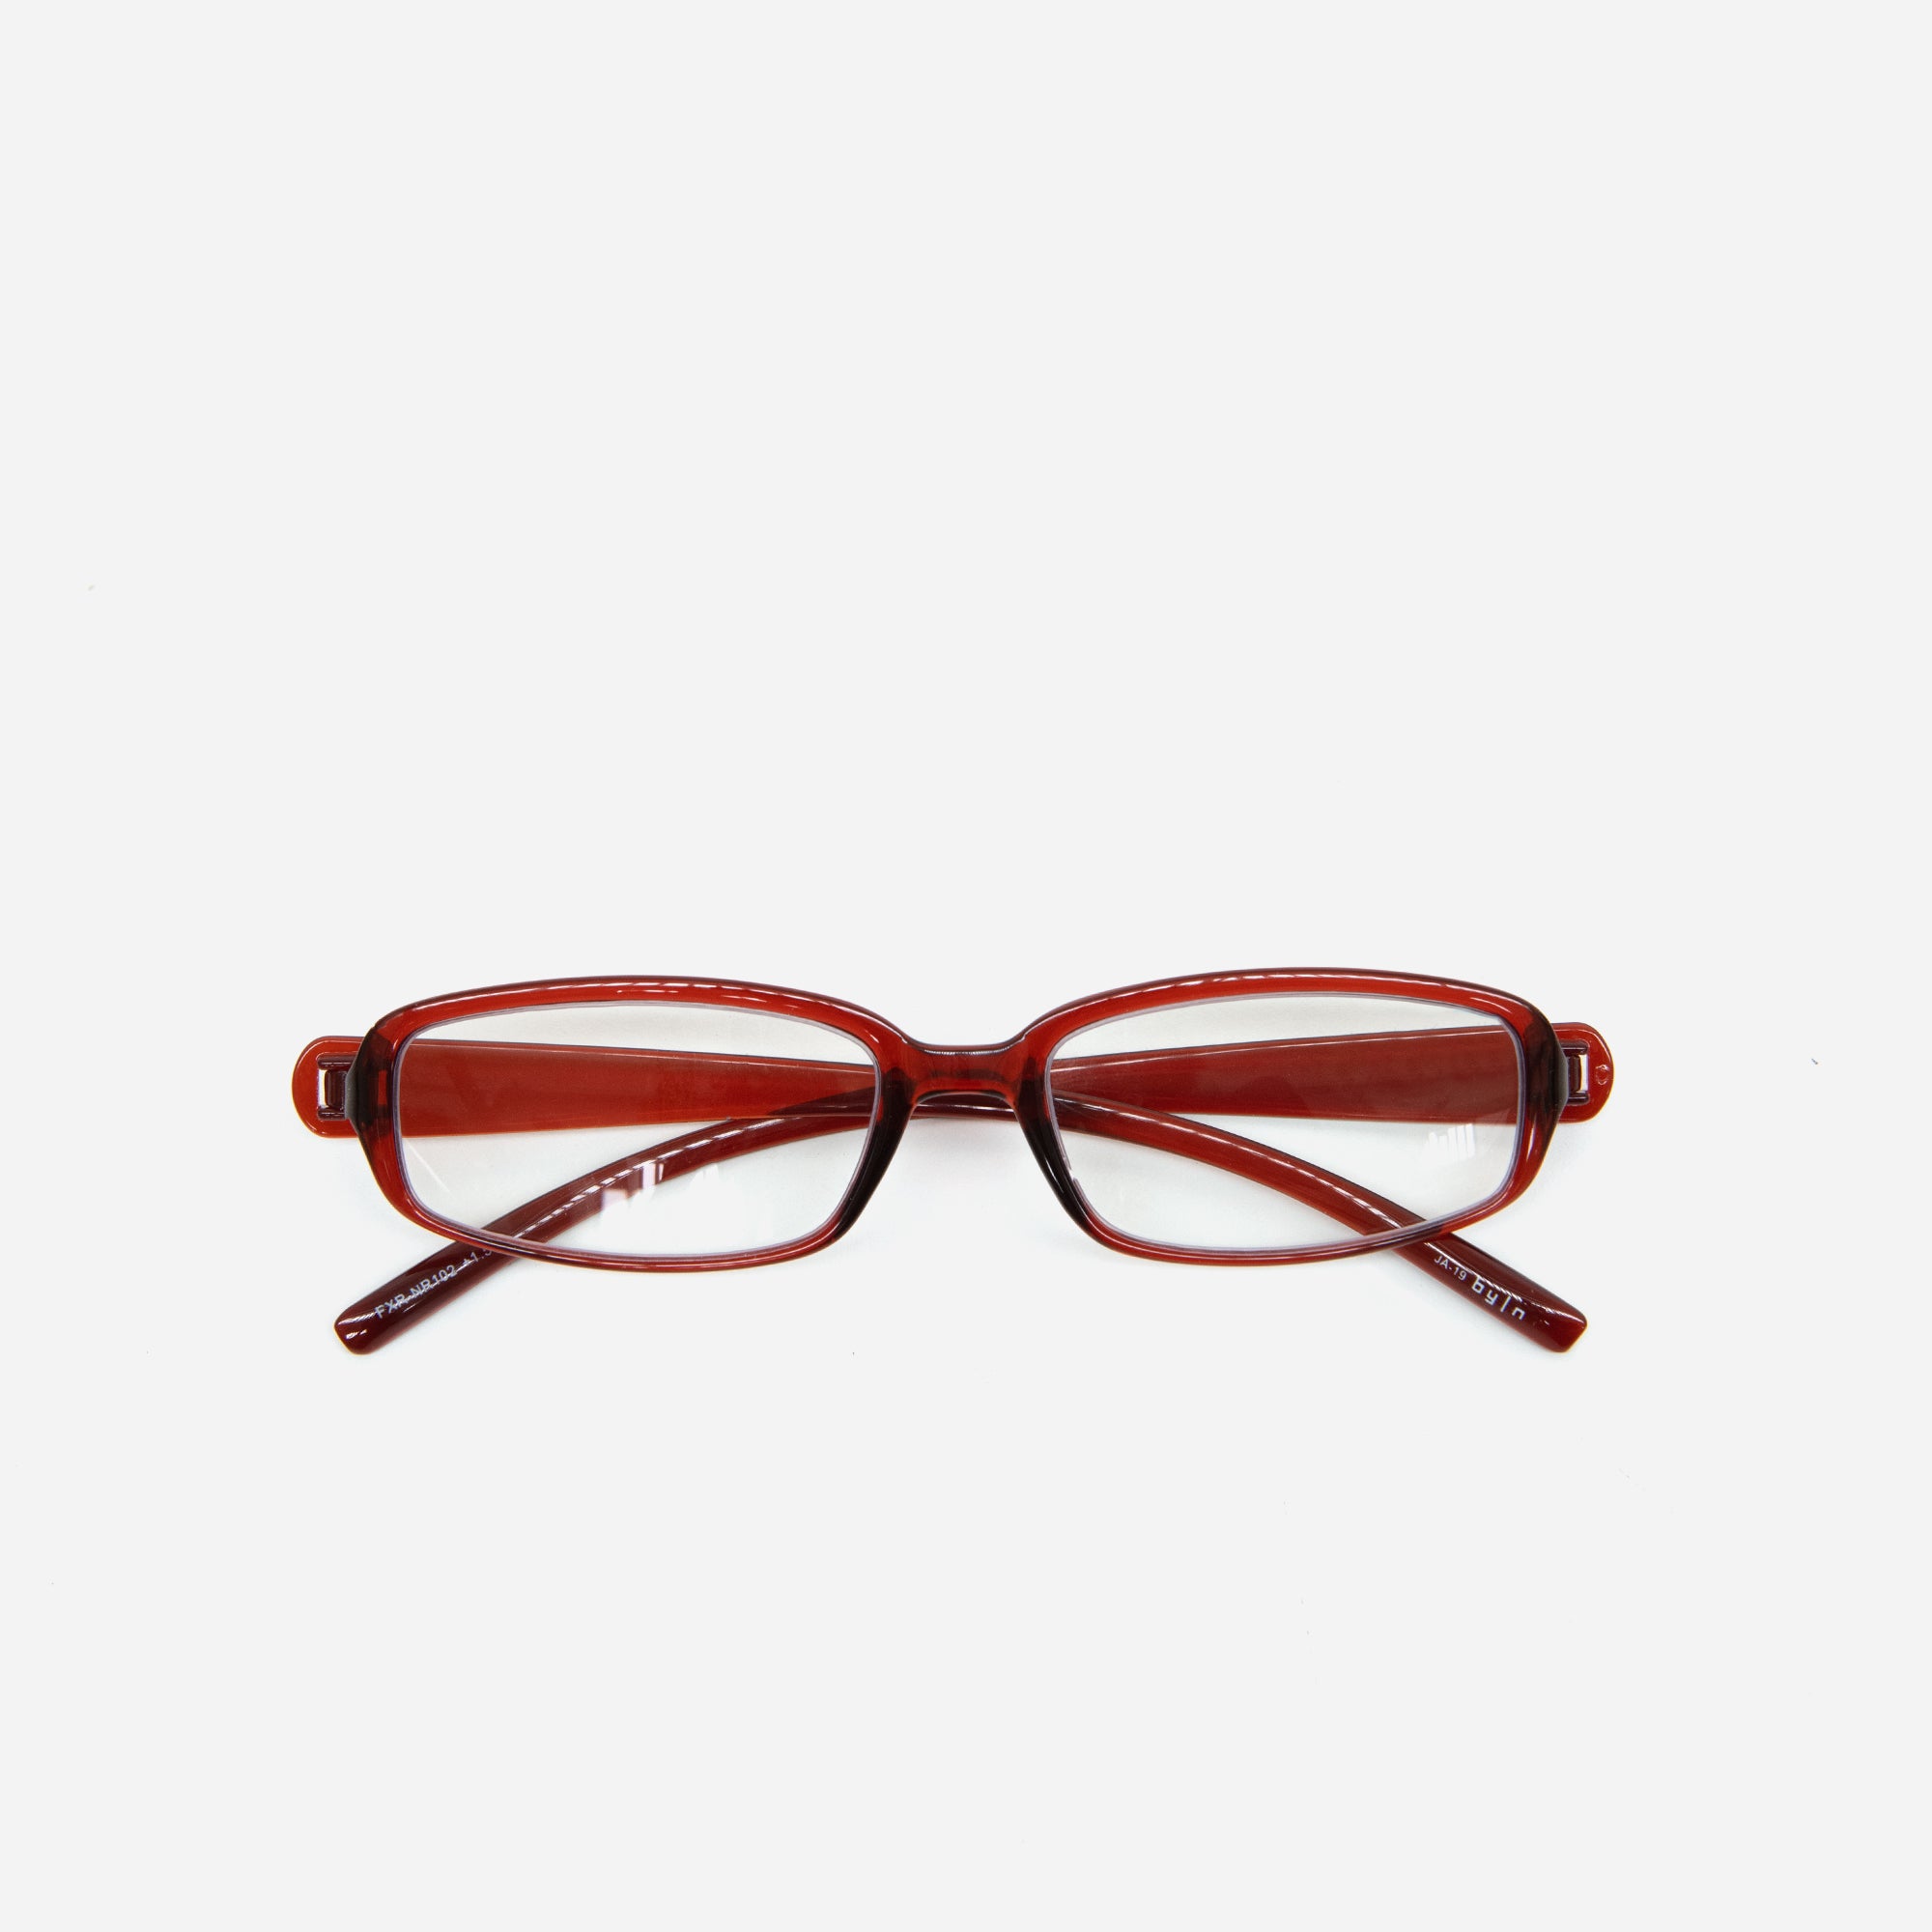 Glasses by Nendo | Shiny Dark Red